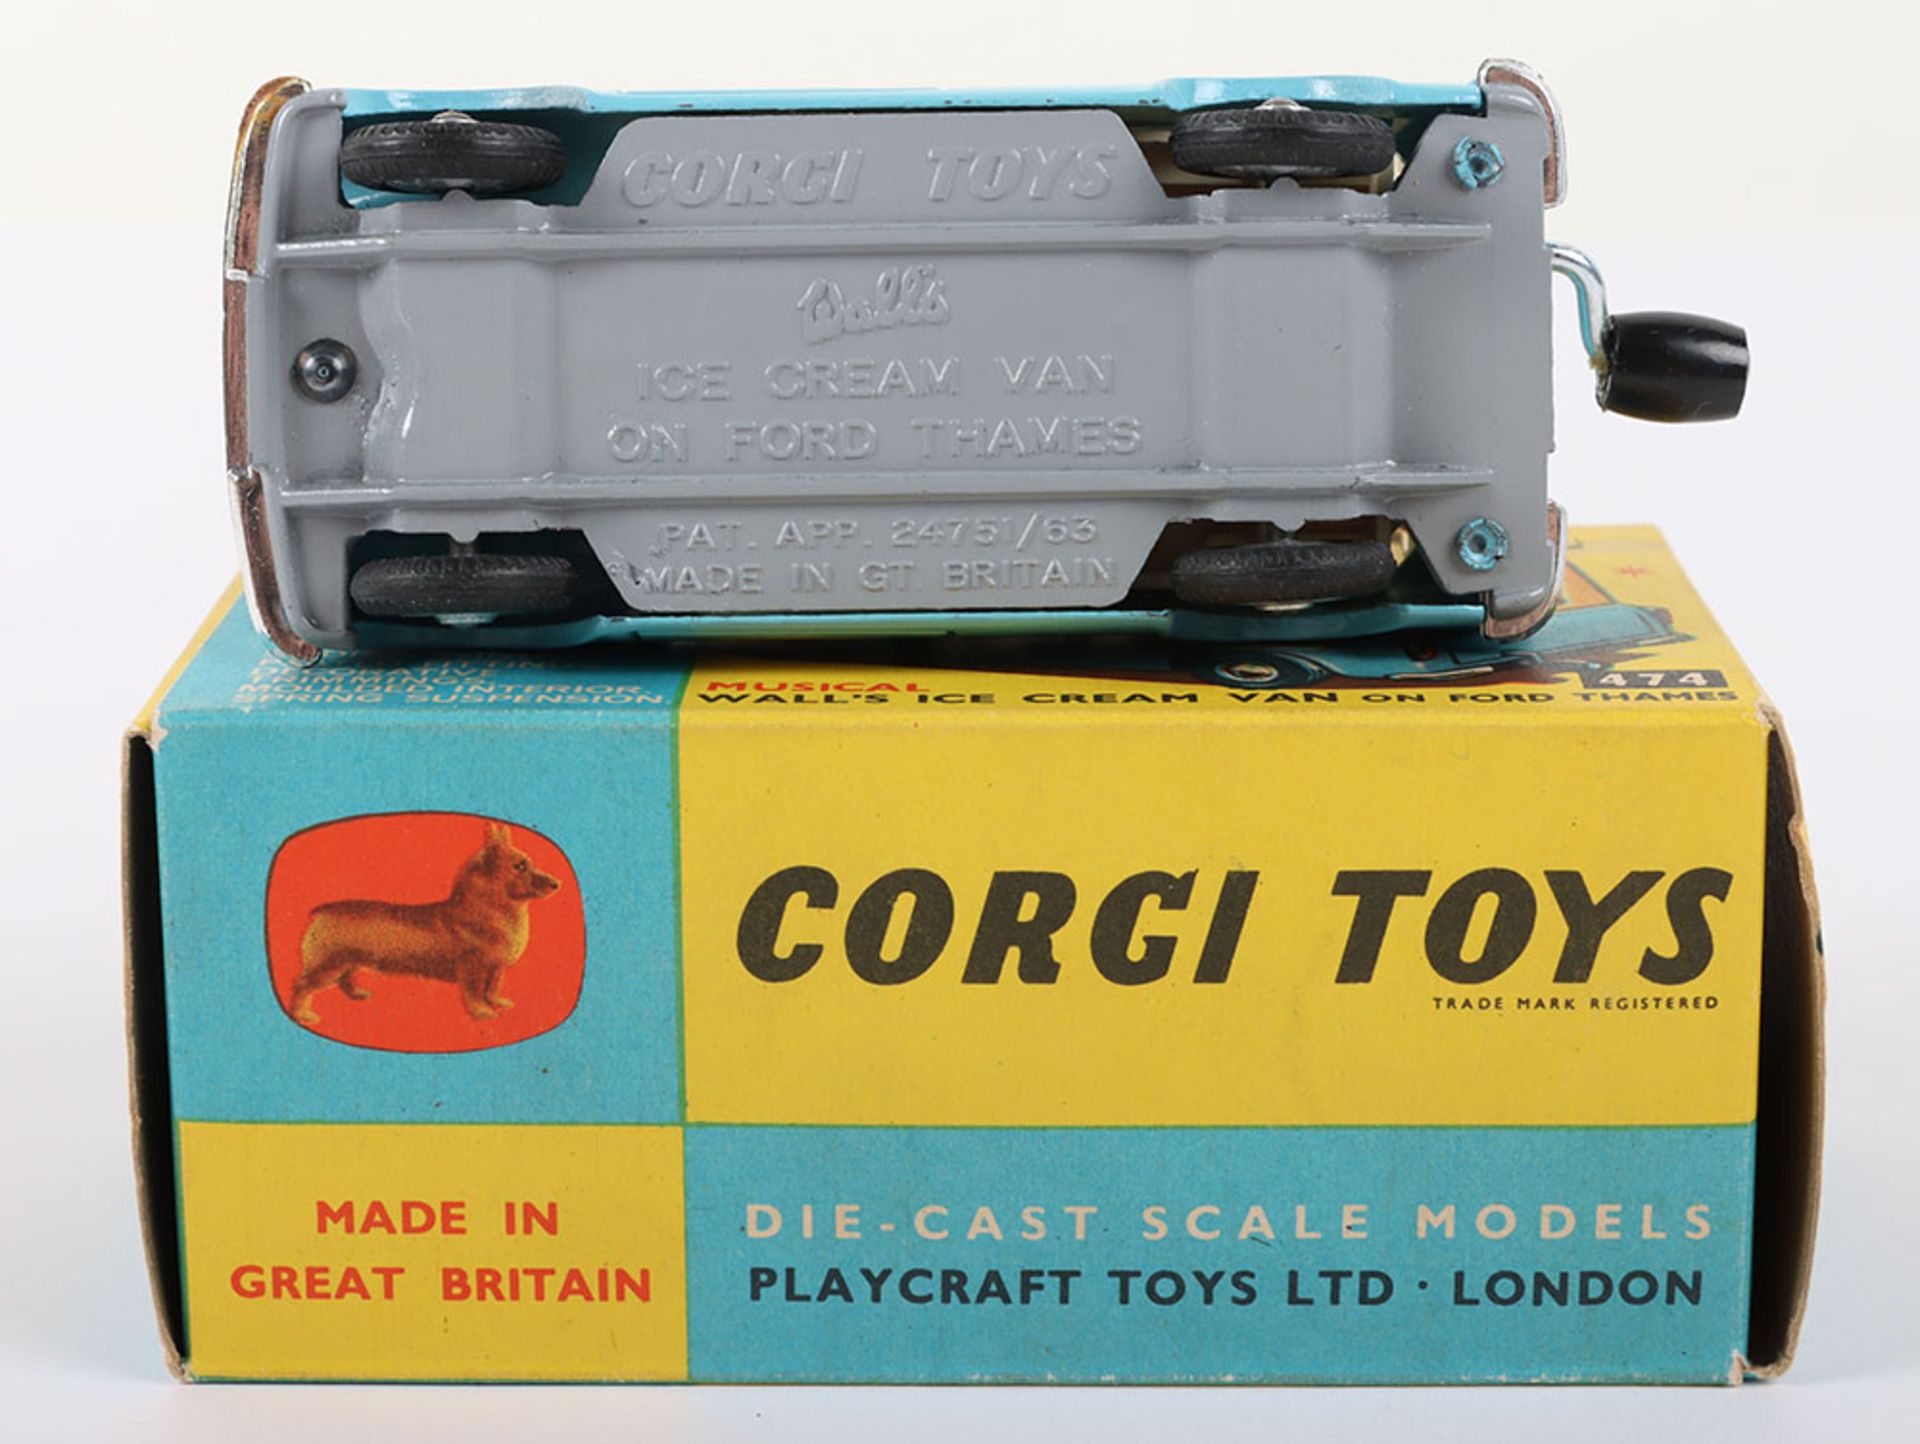 Corgi Toys Corgi Toys 474 Musical Walls Ice Cream Van on Ford Thames - Bild 6 aus 7